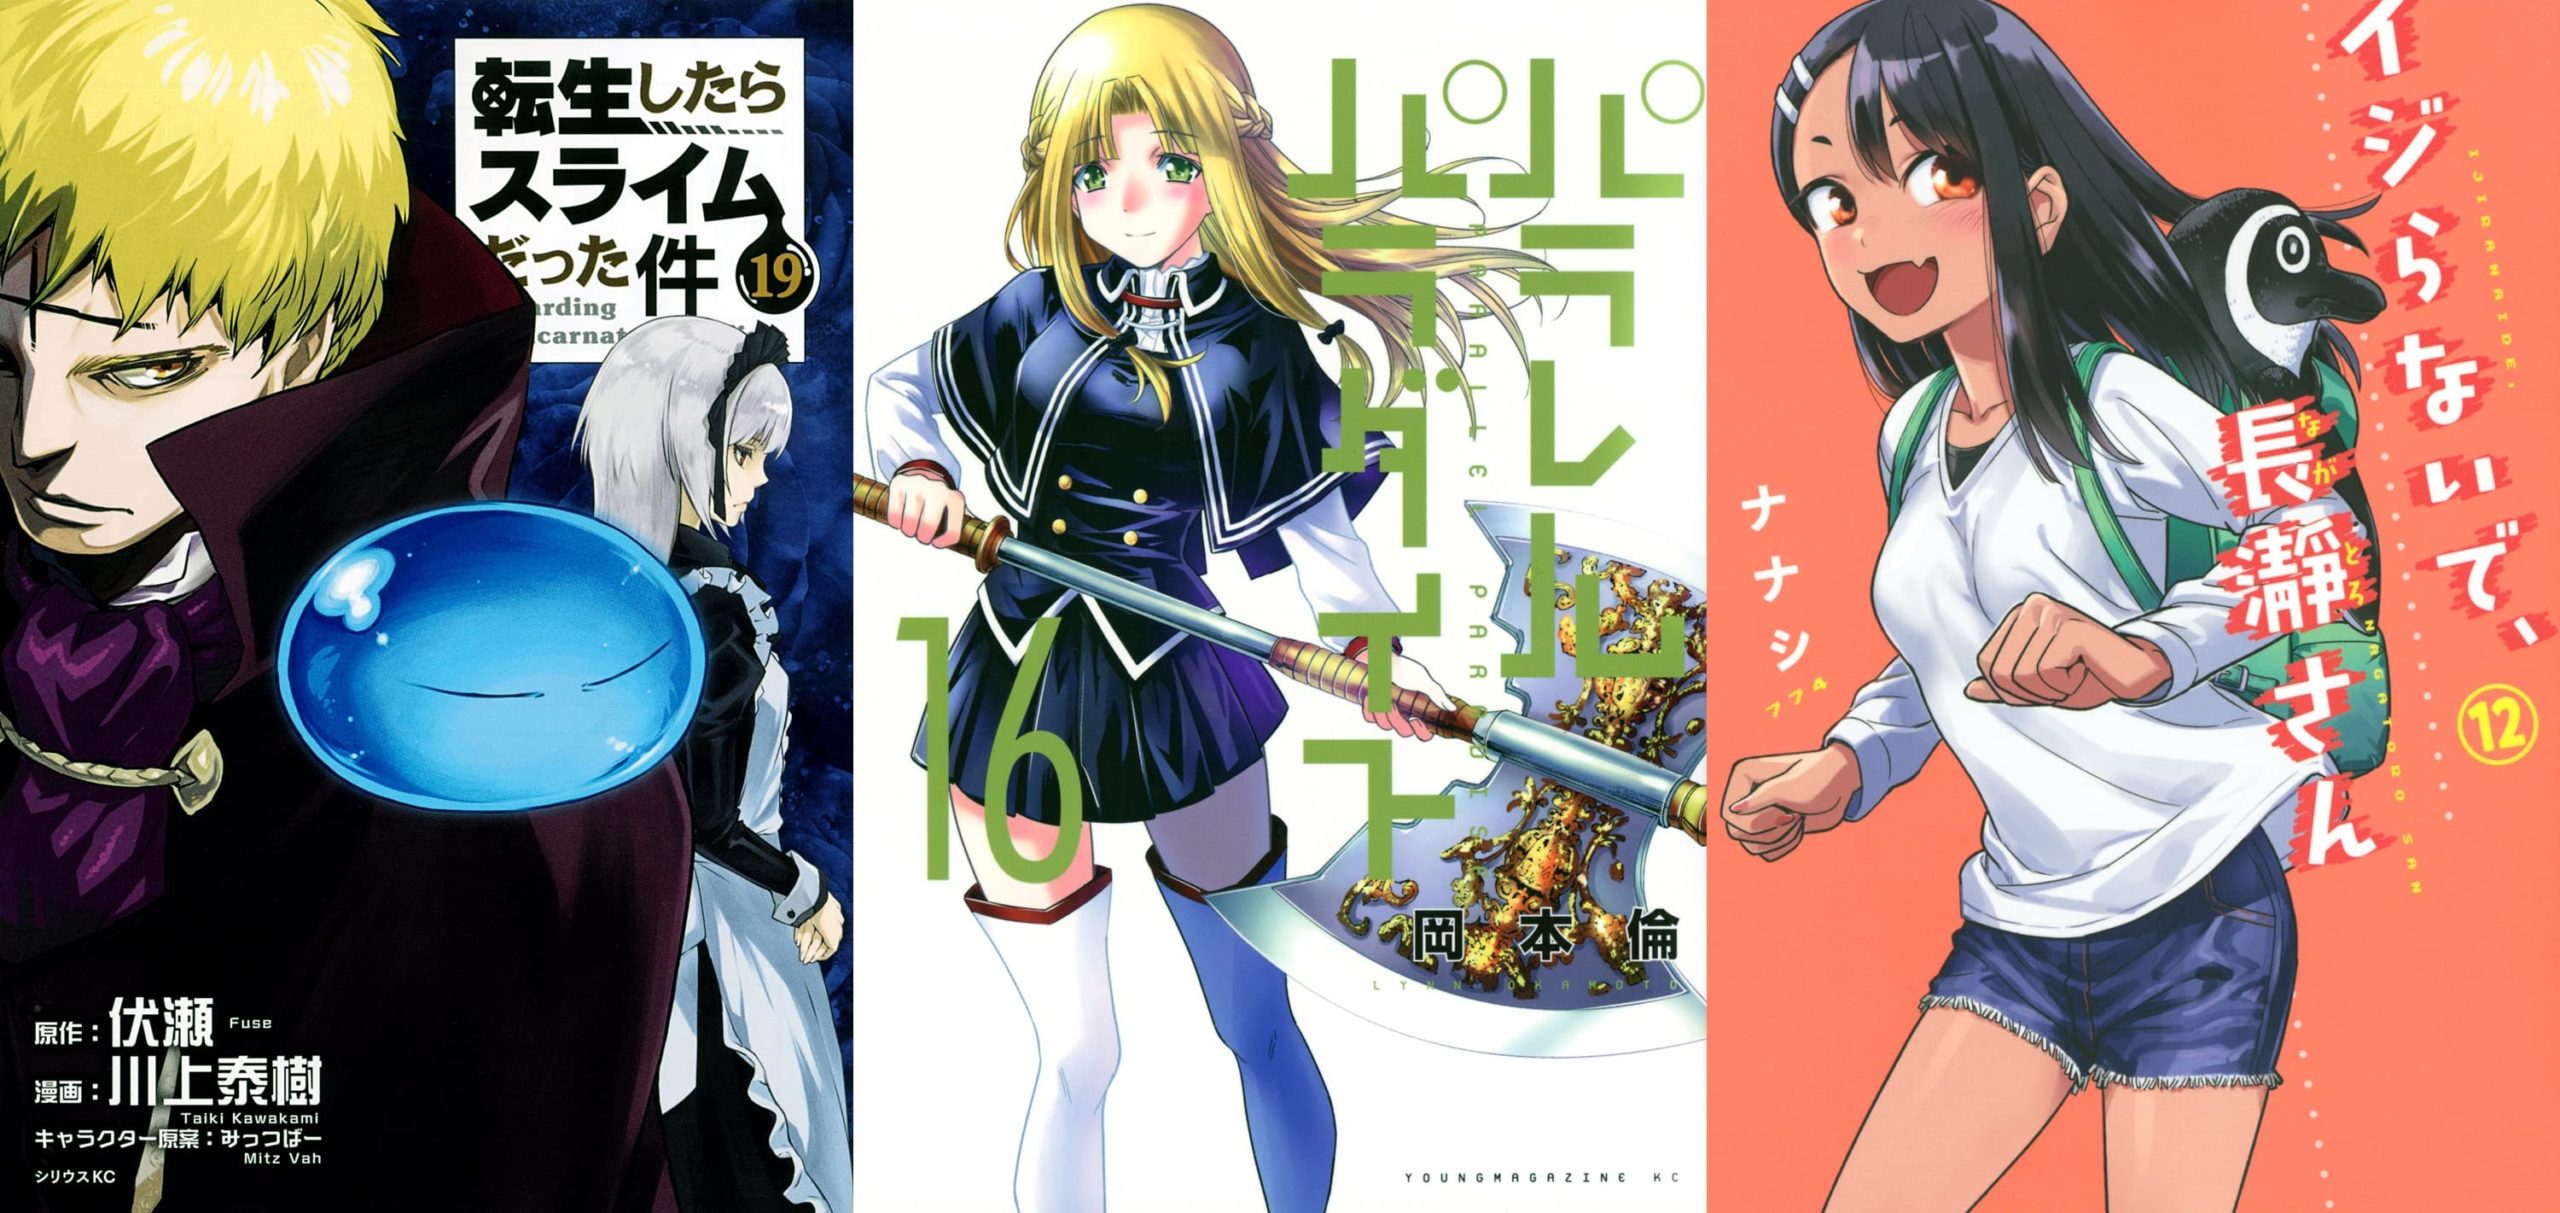 Anime Meikyuu Black Company tem Mudança estranha no BD